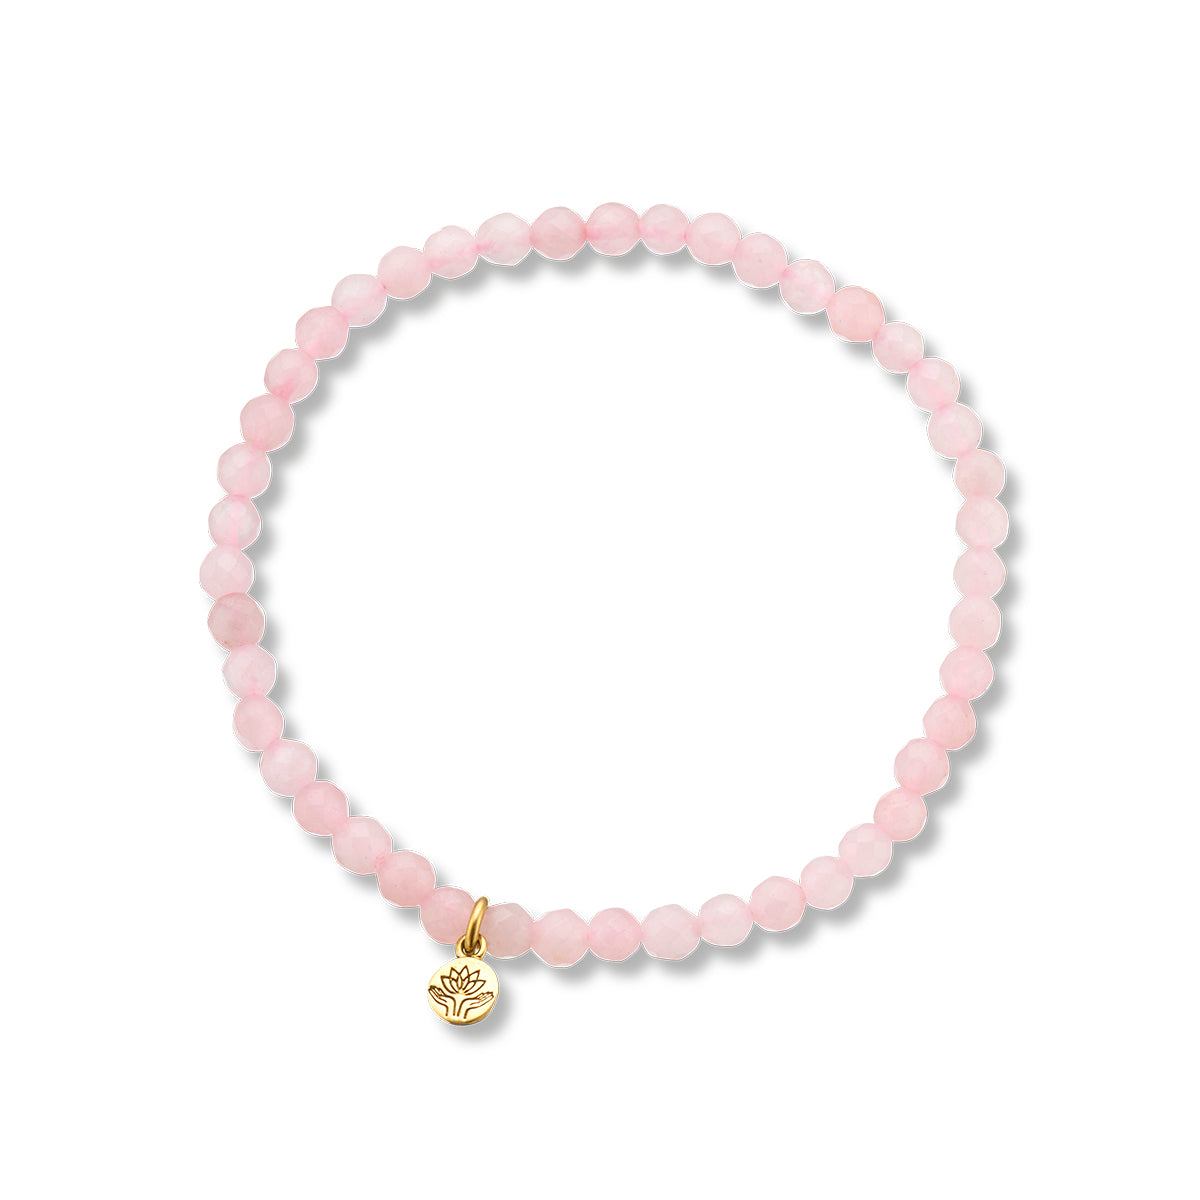 Always in my heart rose quartz gem bracelet